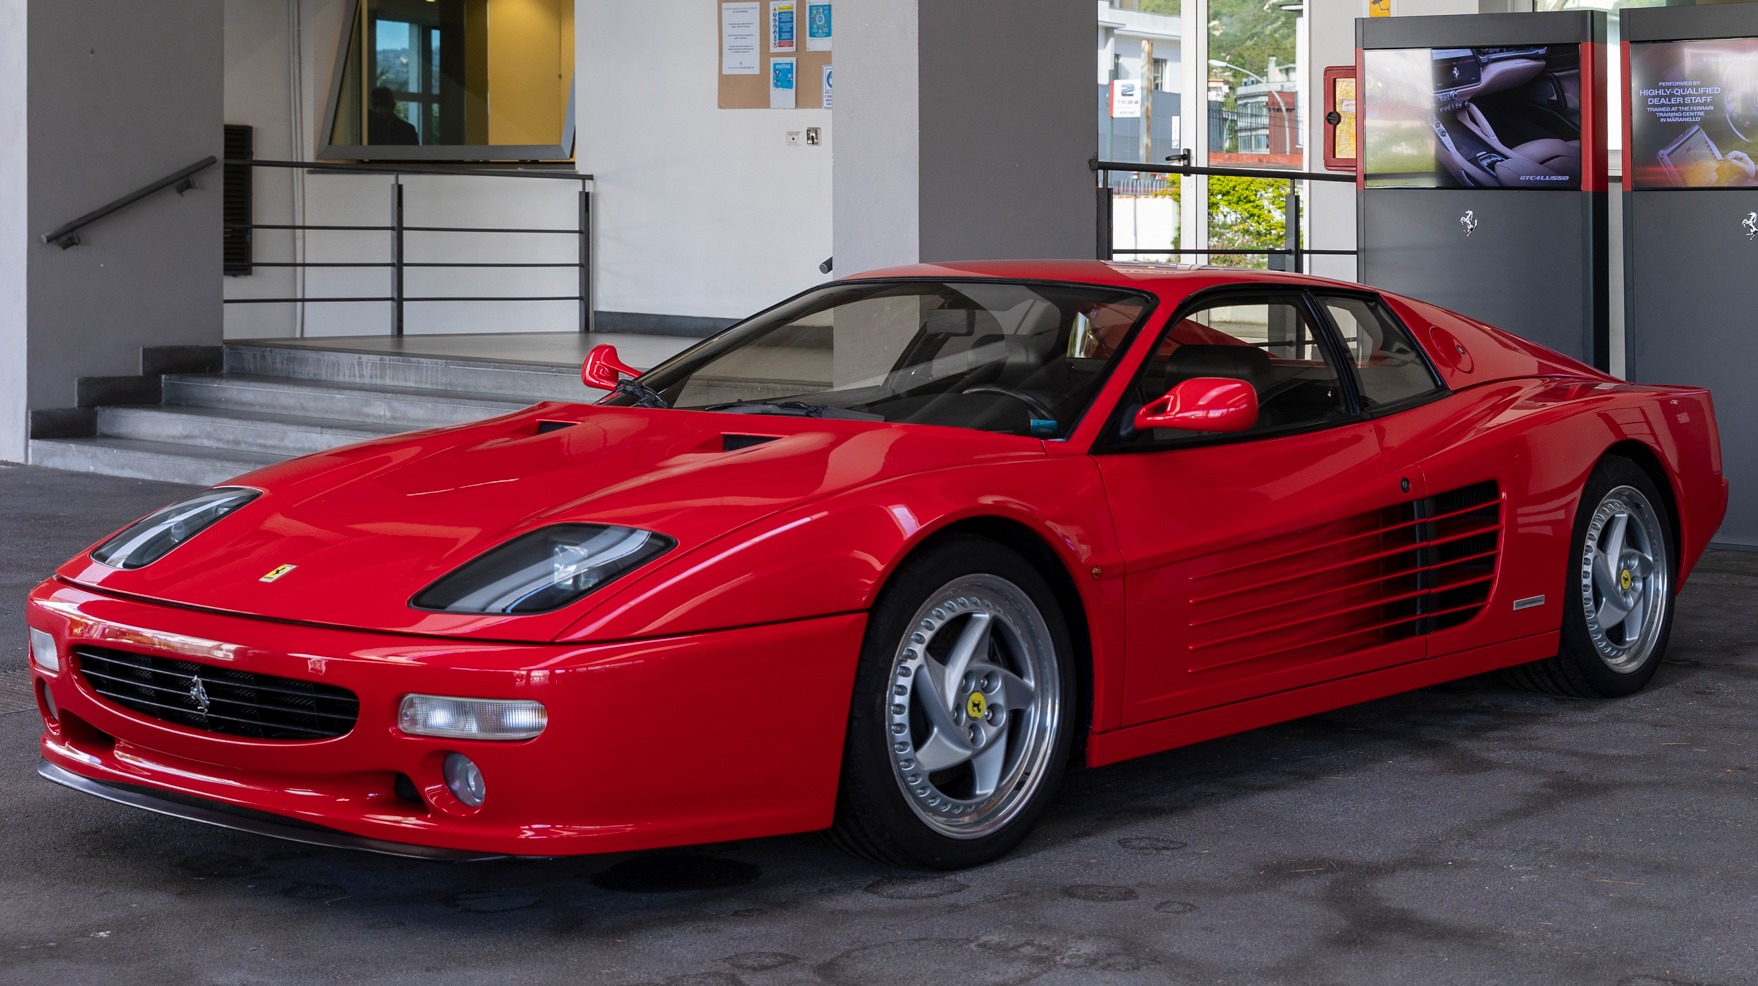 Dopo quasi 30 anni ritrovata la Ferrari Testarossa rubata a Berger a Imola nel ’95.